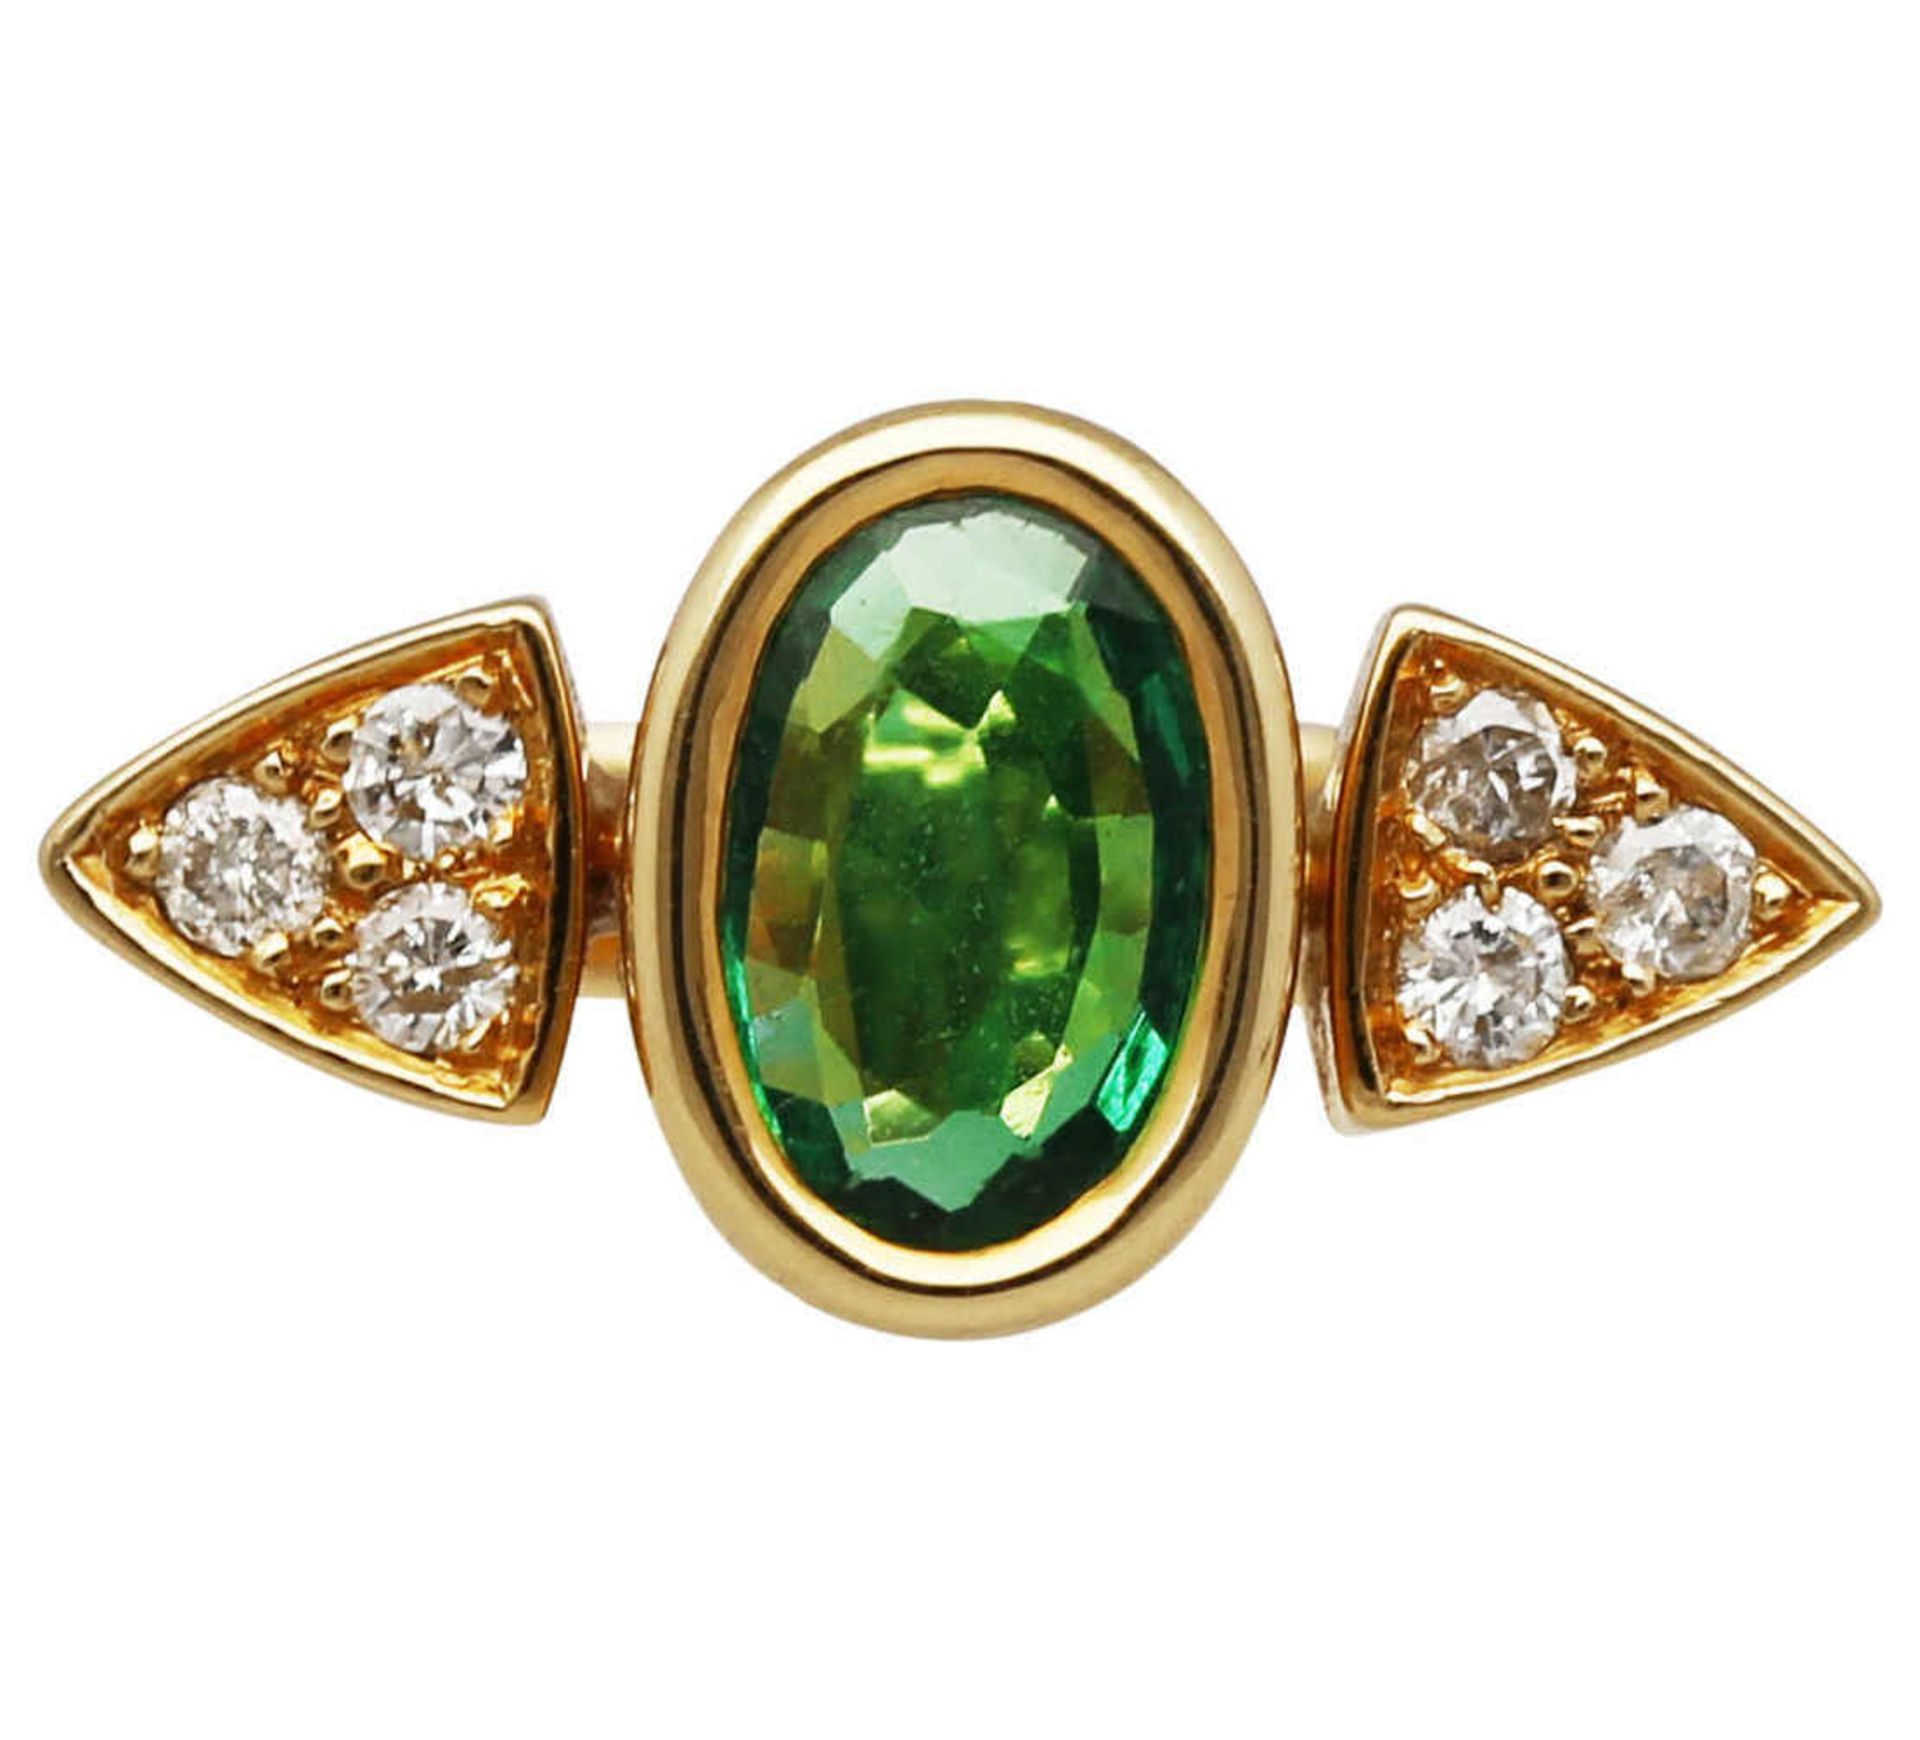 Smaragd-Brillant-Ring Tolles Design in Gelbgold 18K, zentral ein Smaragd oval von ca. 1 ct in sehr